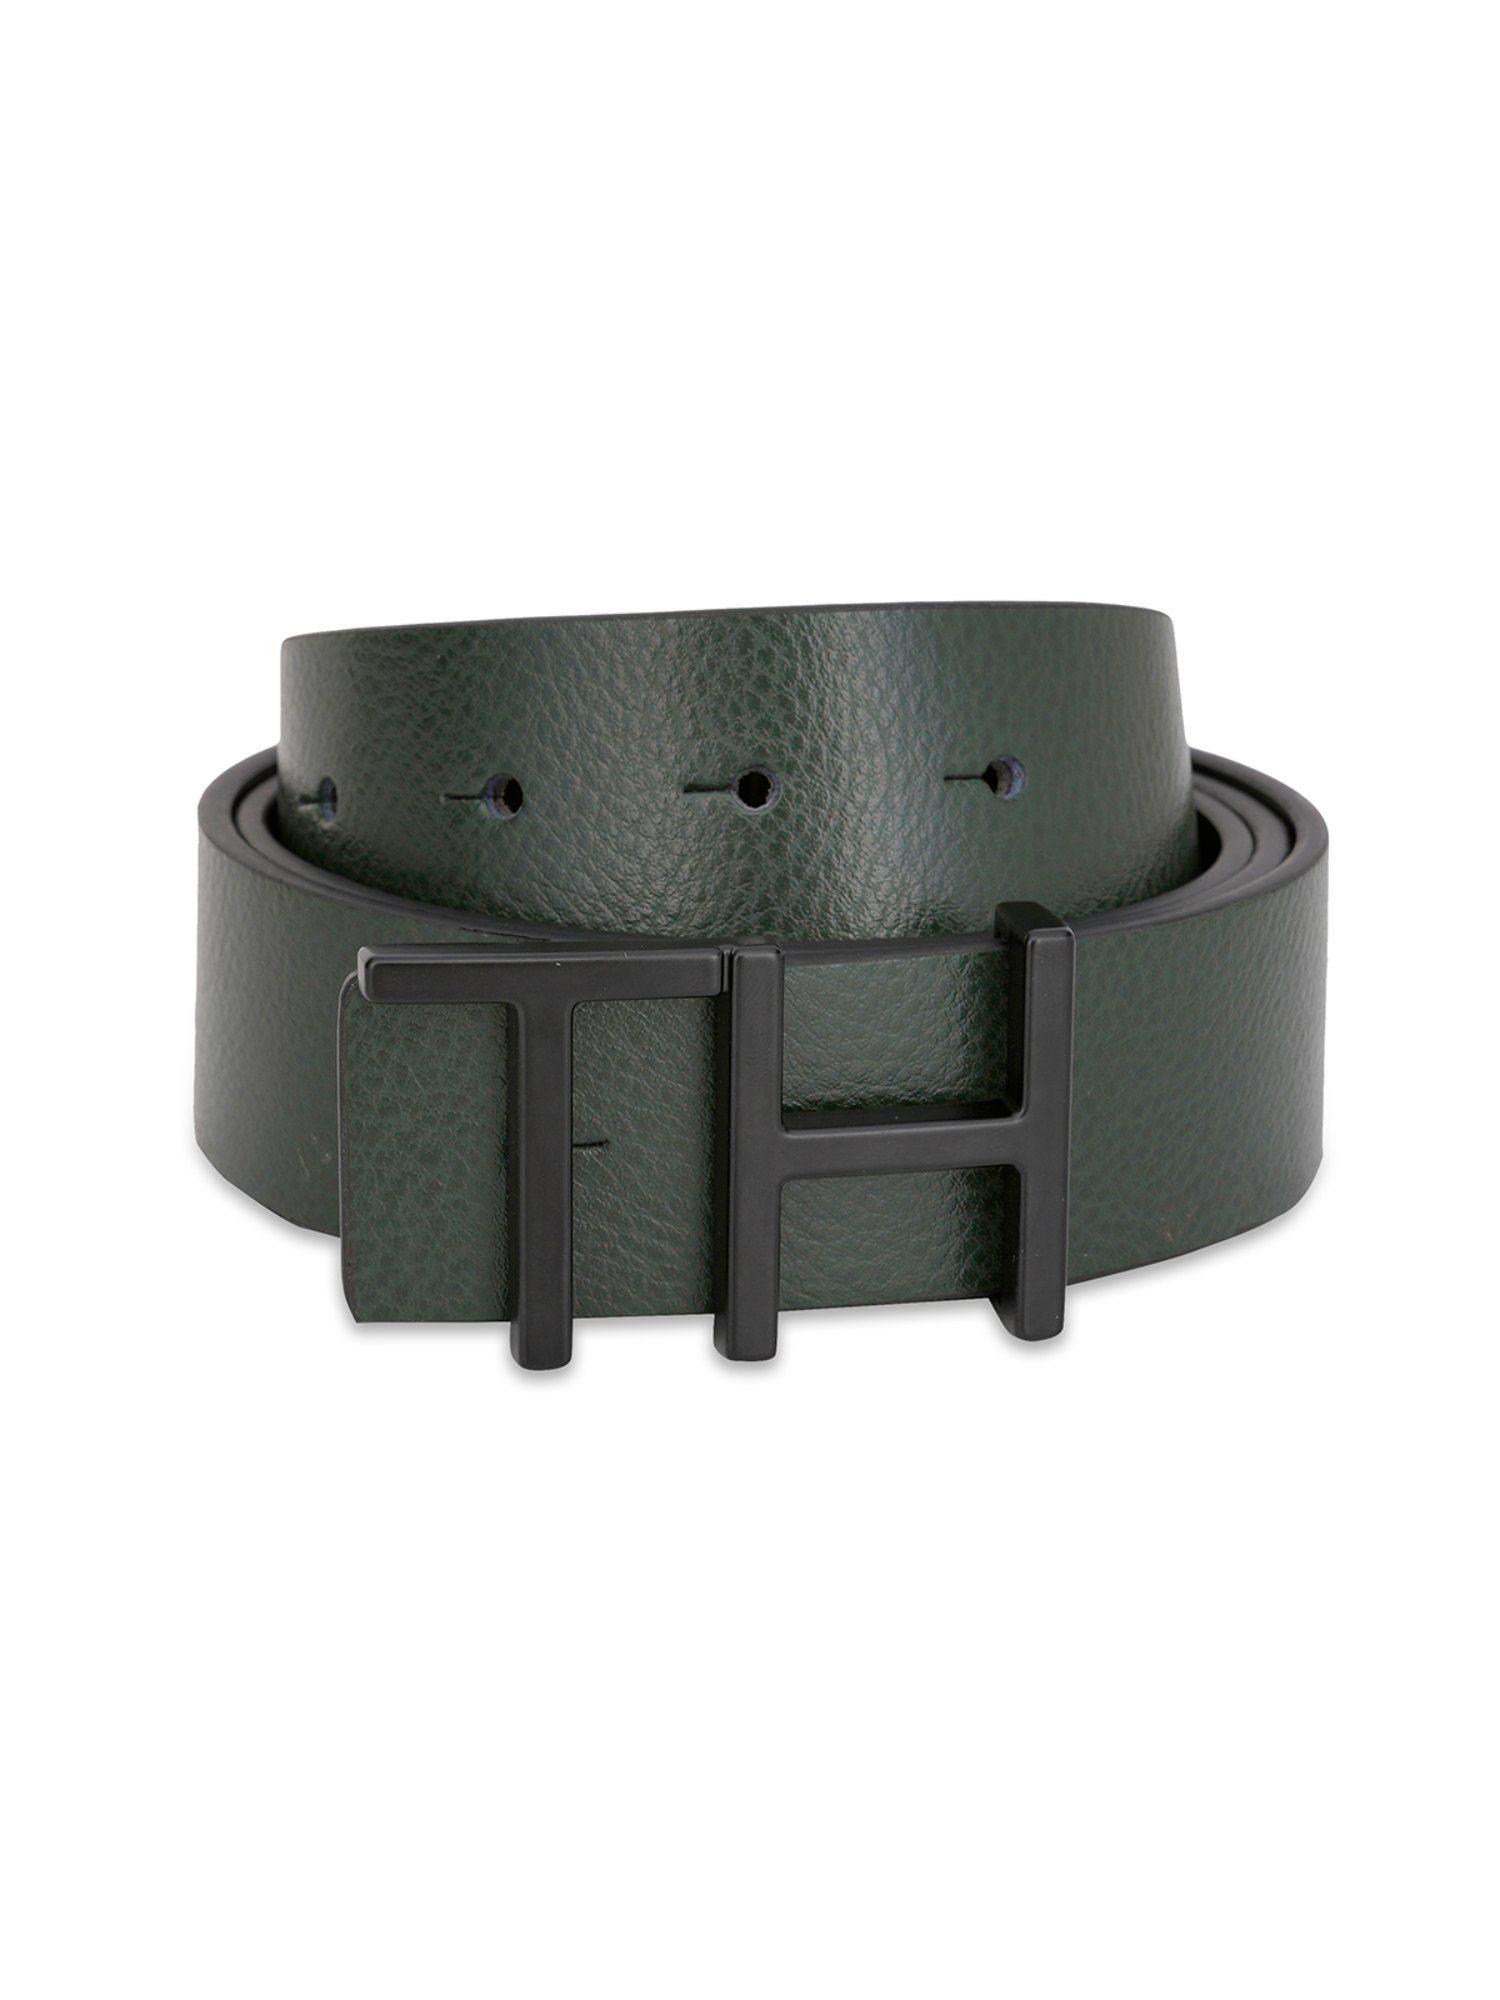 tuscola men reversible leather belt - olive & black